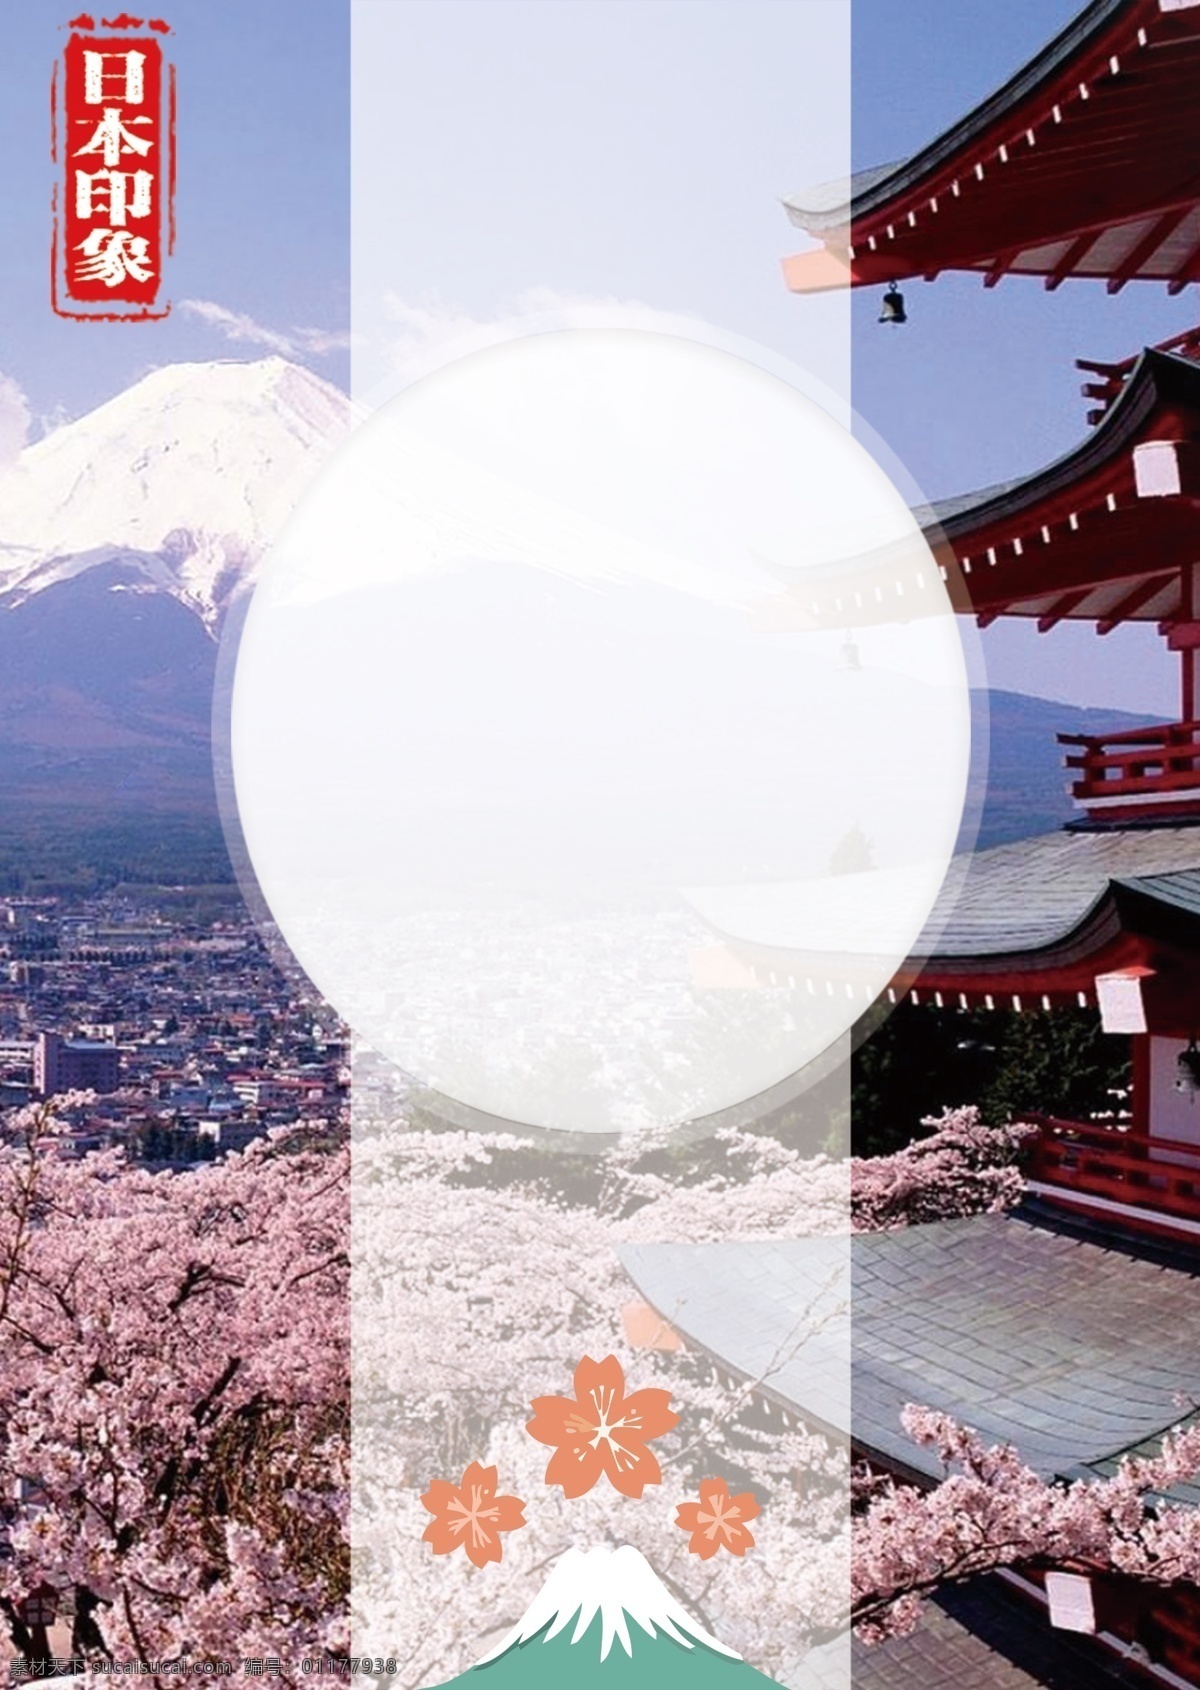 日本 印象 海报 背景 日本背景 日本旅游背景 日本旅游攻略 日本旅游 日本旅游景点 日本旅游路线